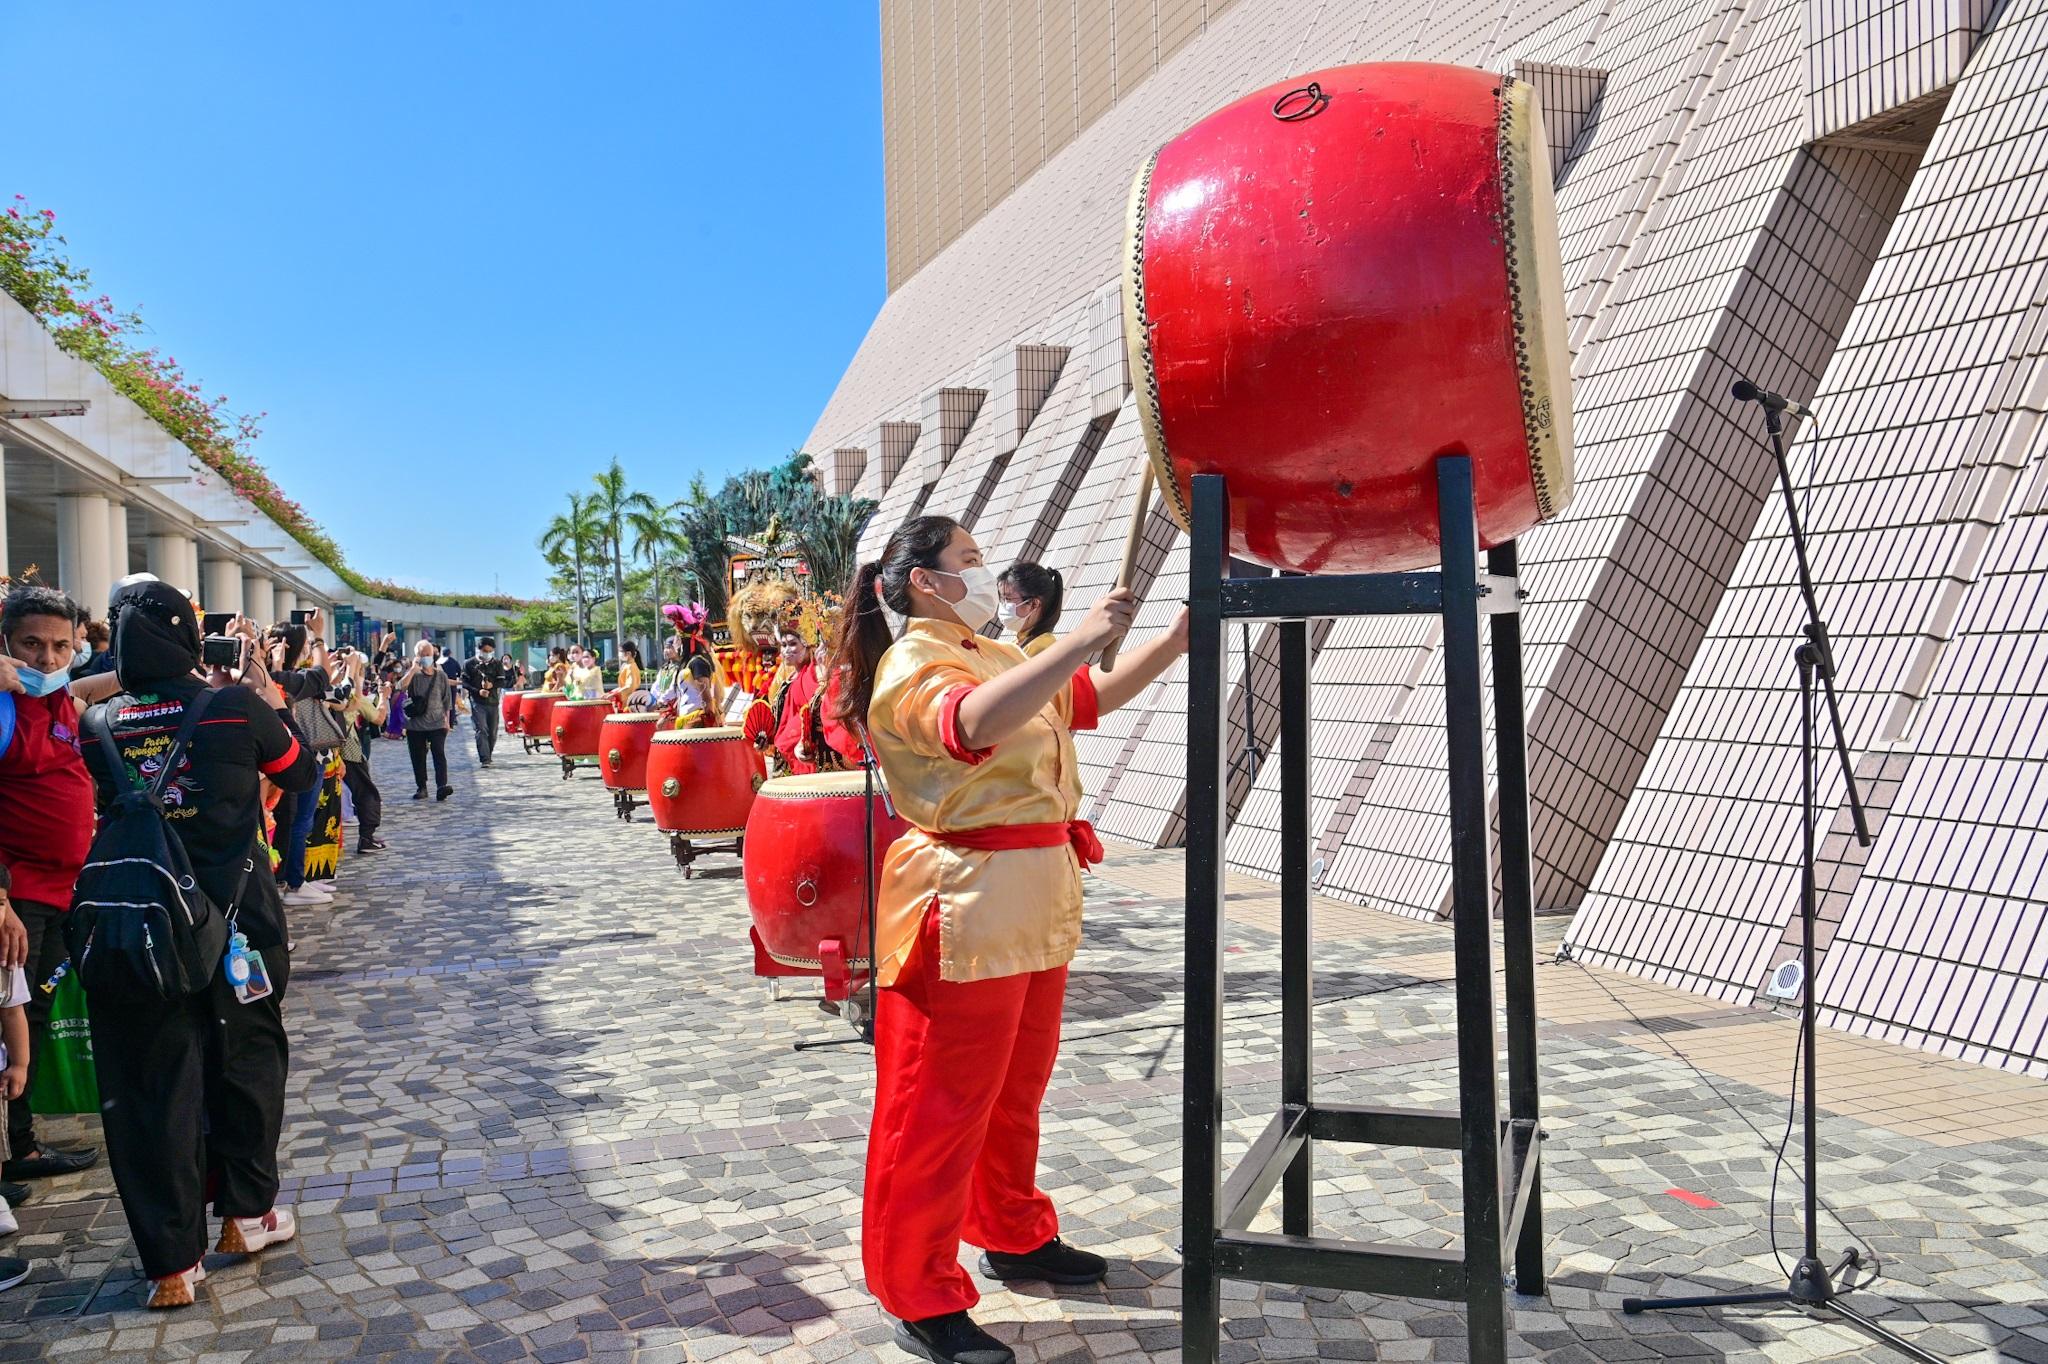 康樂及文化事務署今日（十一月十三日）下午在香港文化中心露天廣場舉行「國際藝采」，透過豐富活動包括傳統民族舞台表演、民族面具展示和周邊活動攤位，展現不同地域的獨特文化和演藝才華。圖示開幕典禮的鼓樂表演。